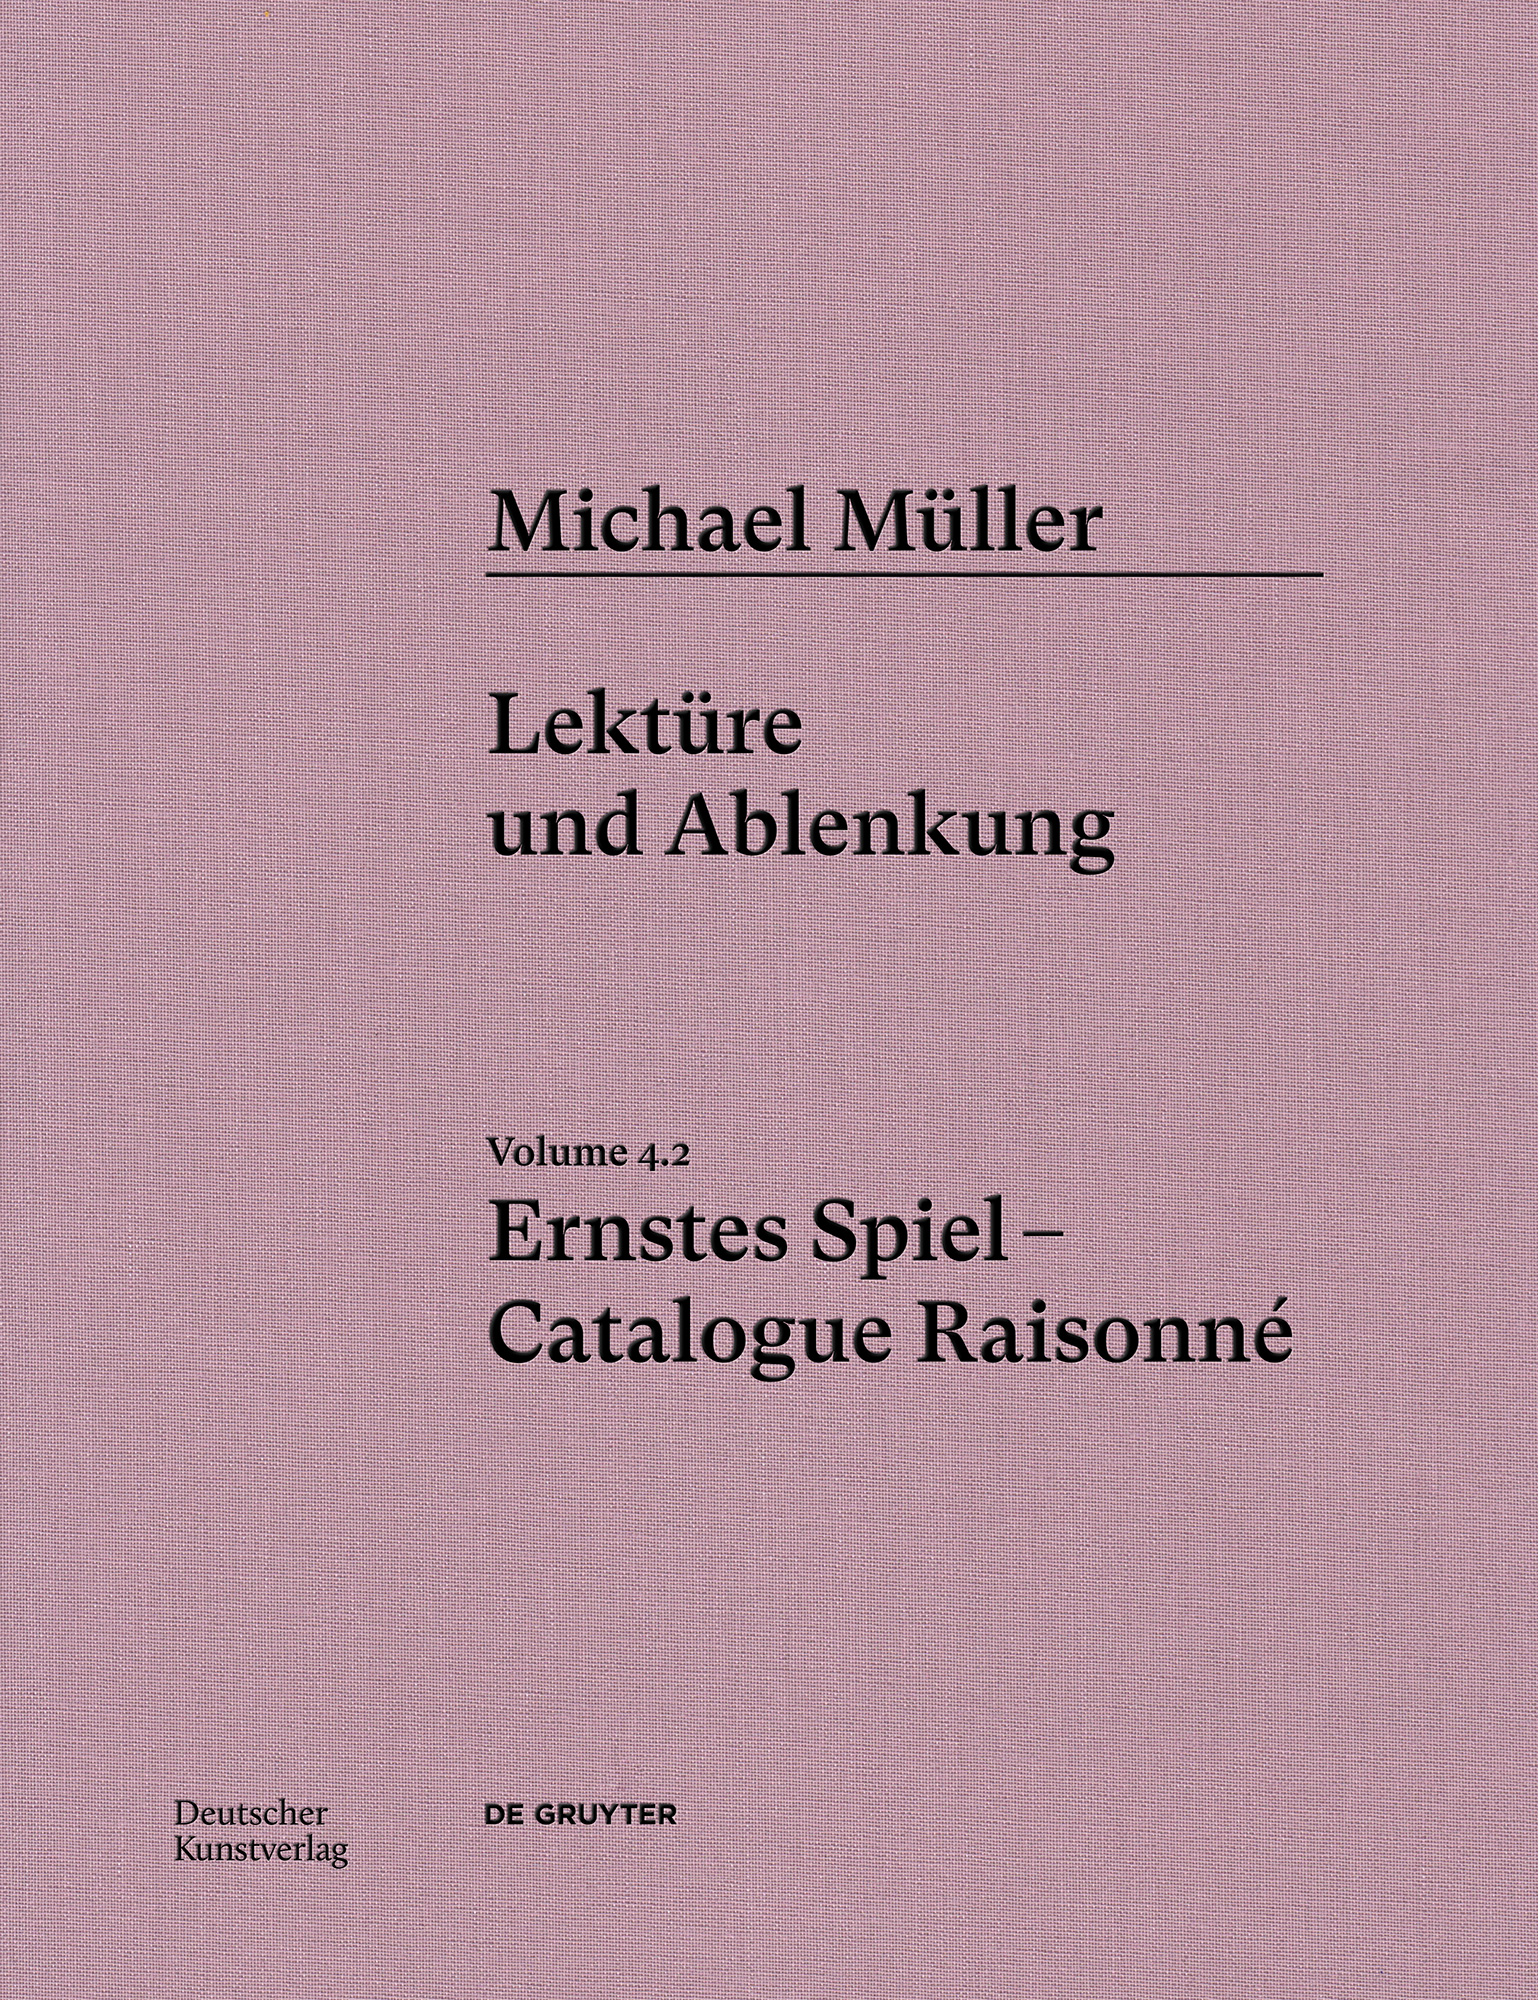 Lektüre und Ablenkung | Presentation and Book Release